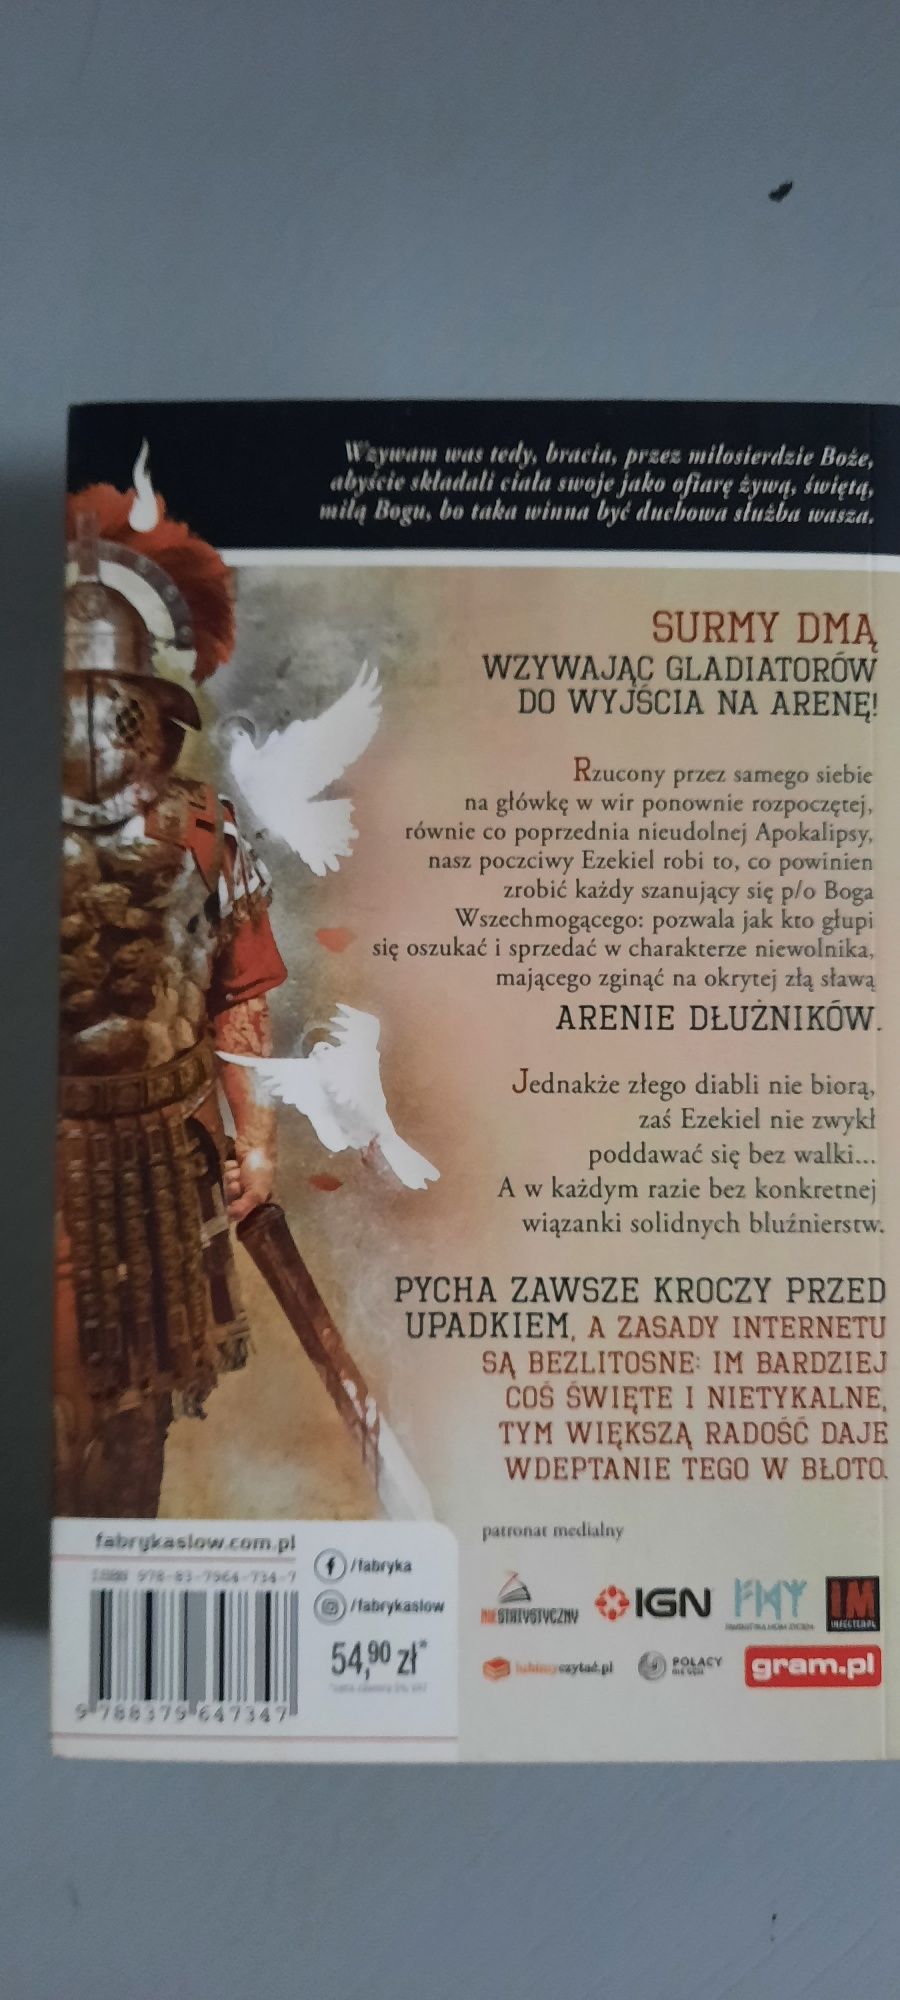 Komornik Arena dłużników 2 Michał Gałkowski